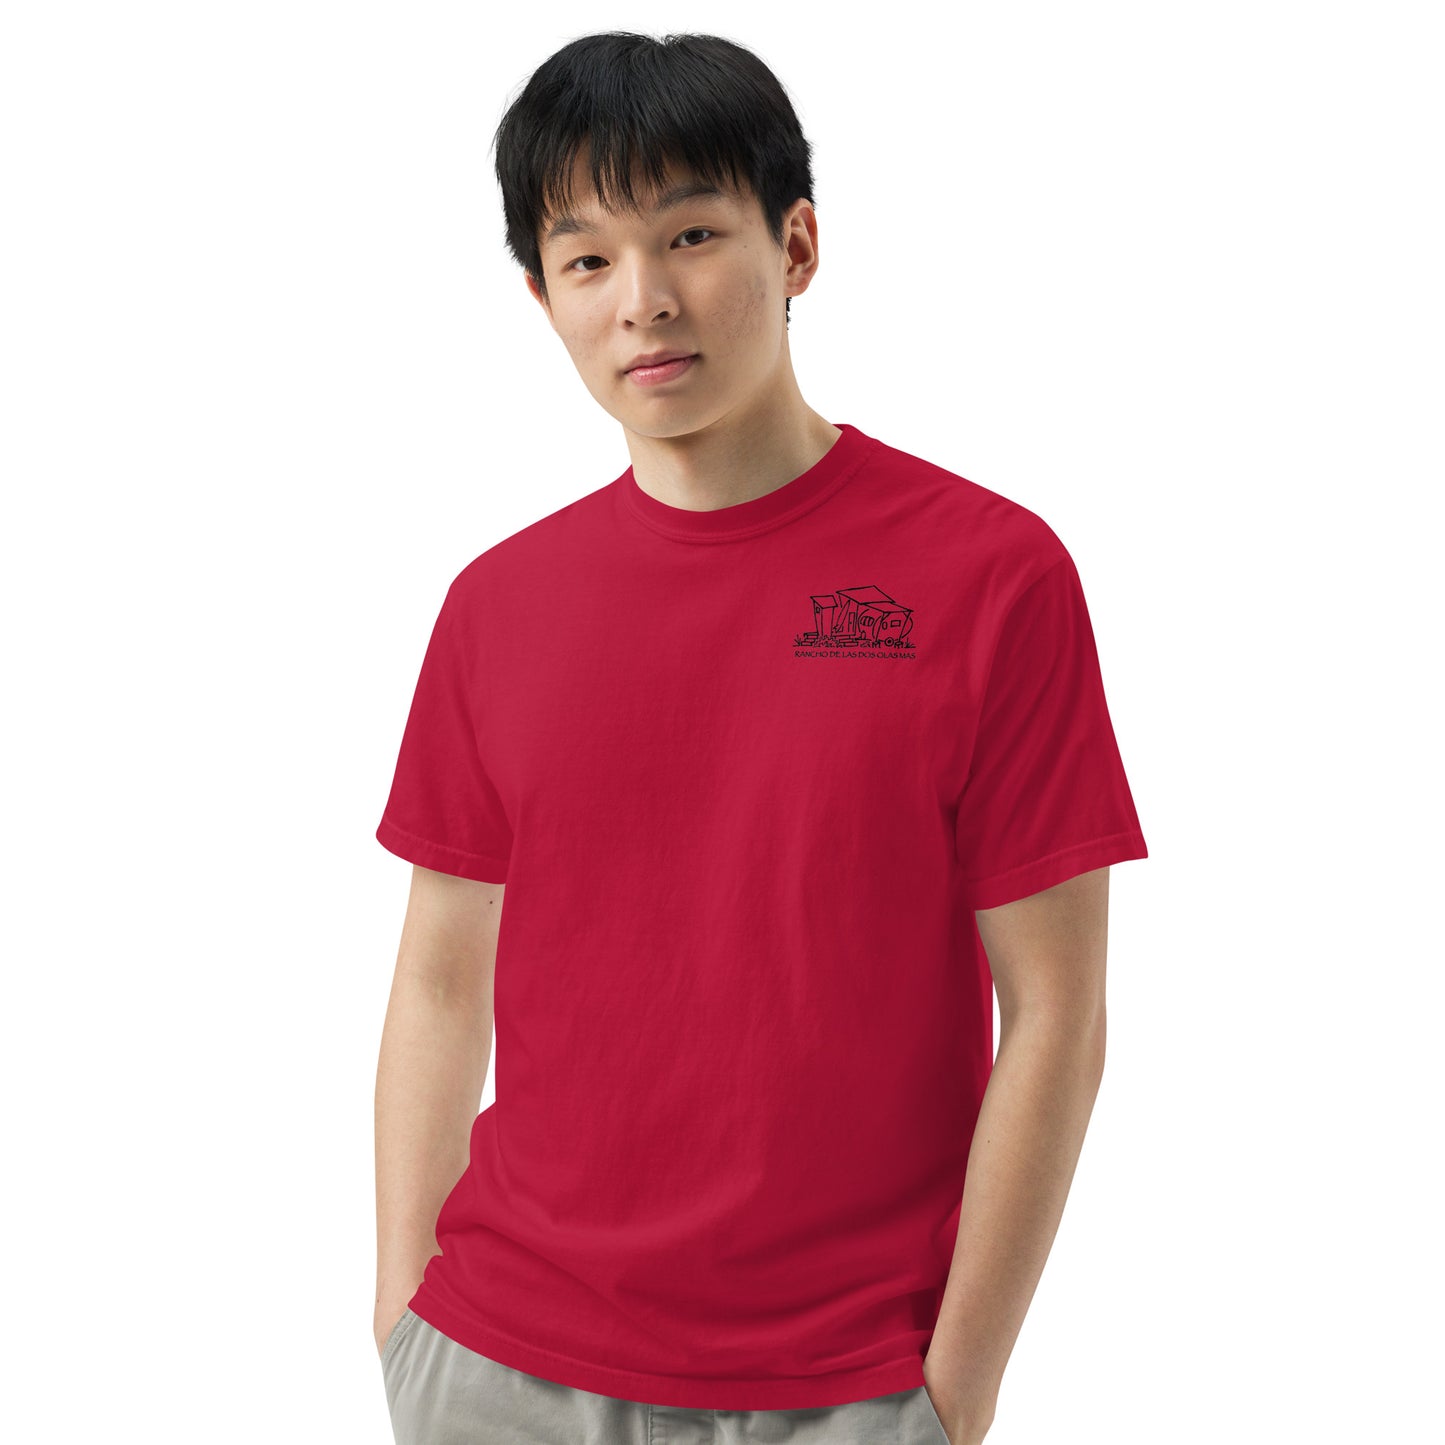 Men’s garment-dyed heavyweight t-shirt - Original